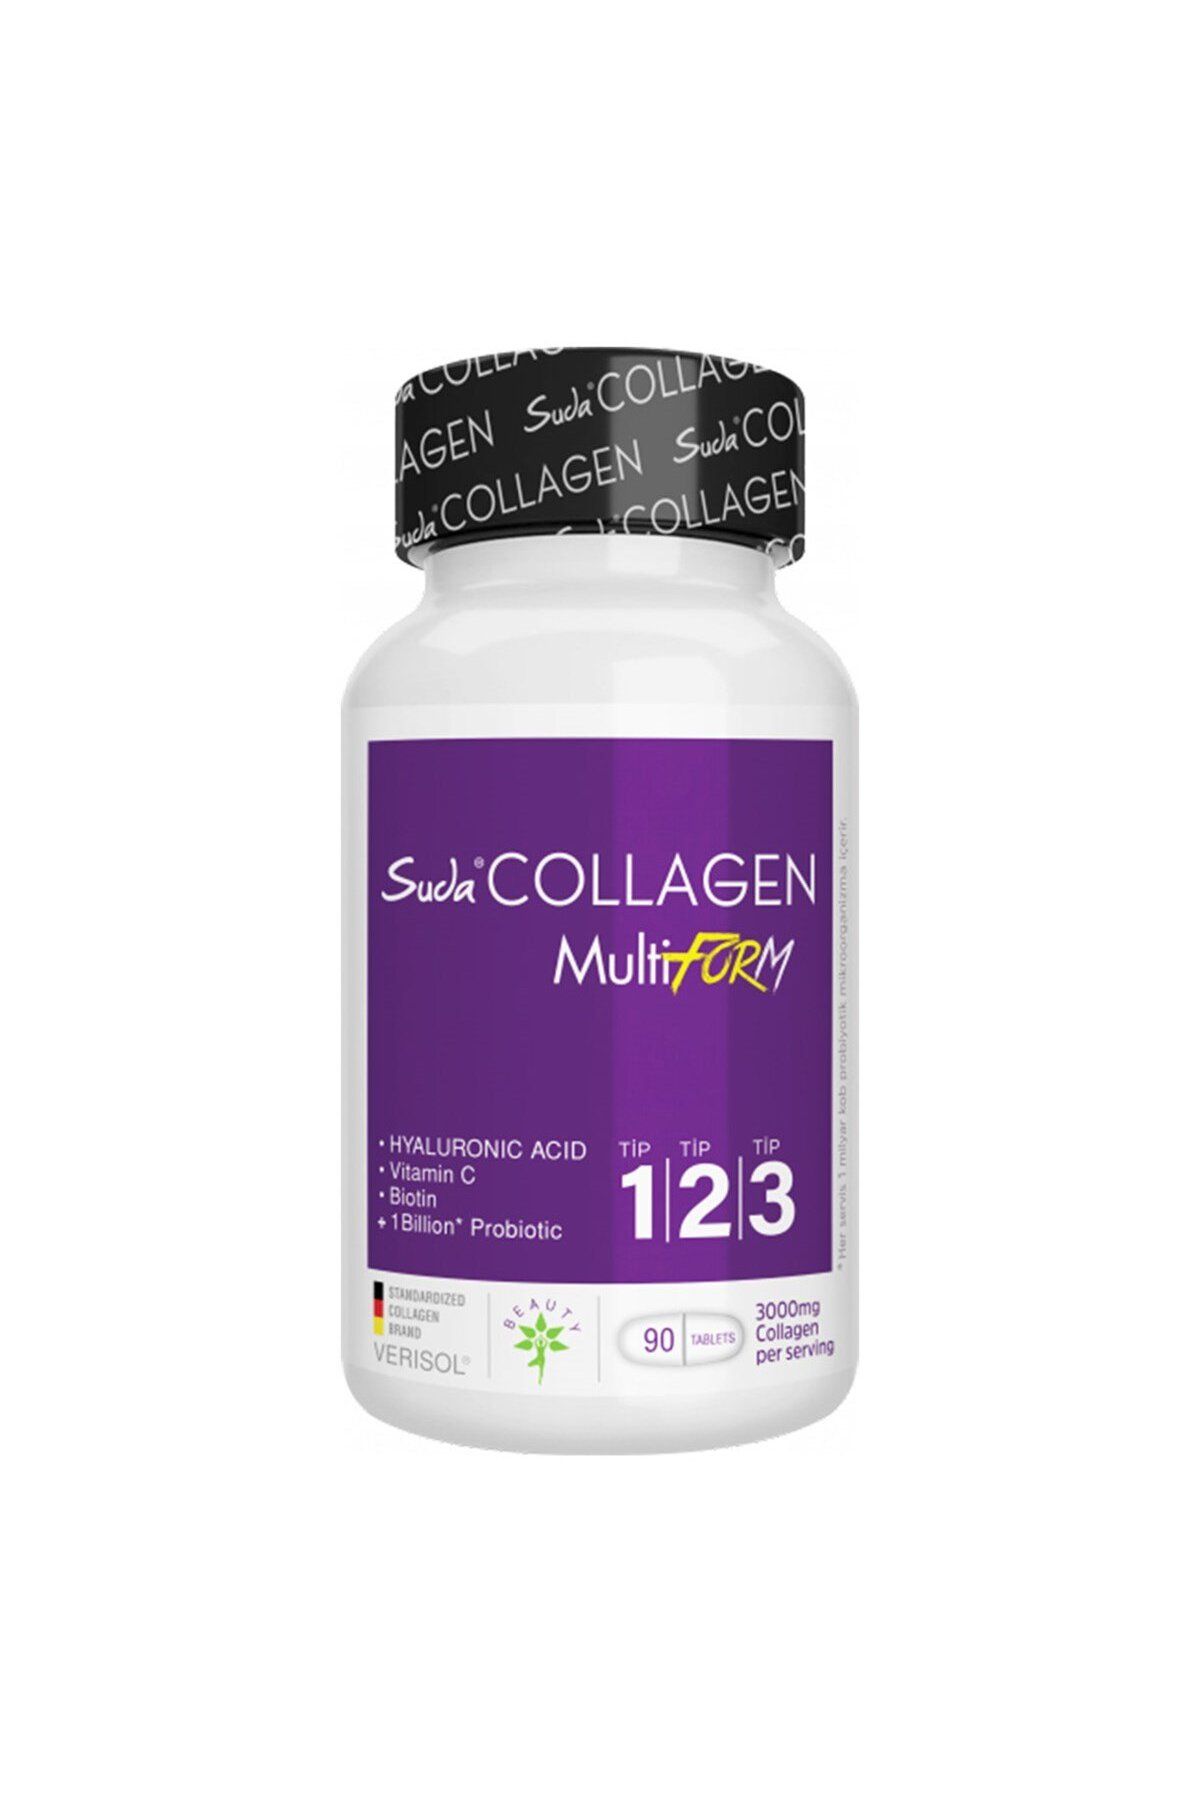 Suda Collagen Multiform Tip 1,2,3 Kolajen İçeren Takviye Edici Gıda 90 Tablet